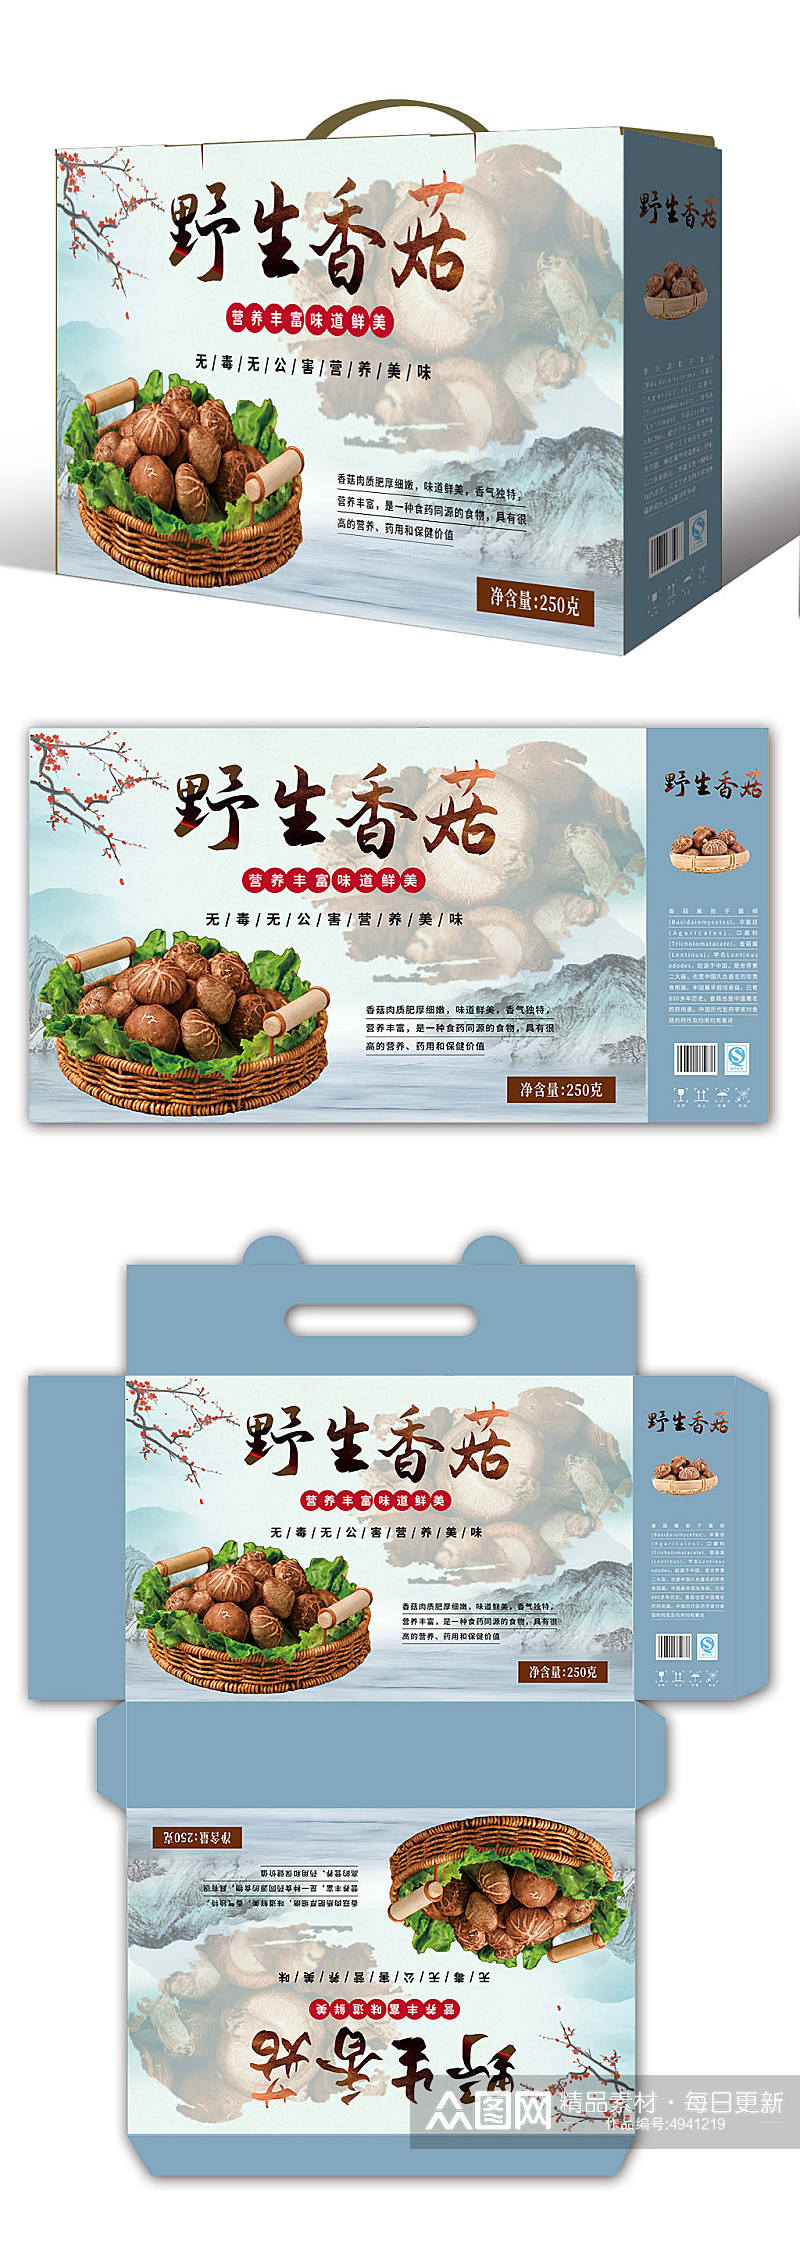 野生山珍香菇蘑菇农产品礼盒包装设计素材